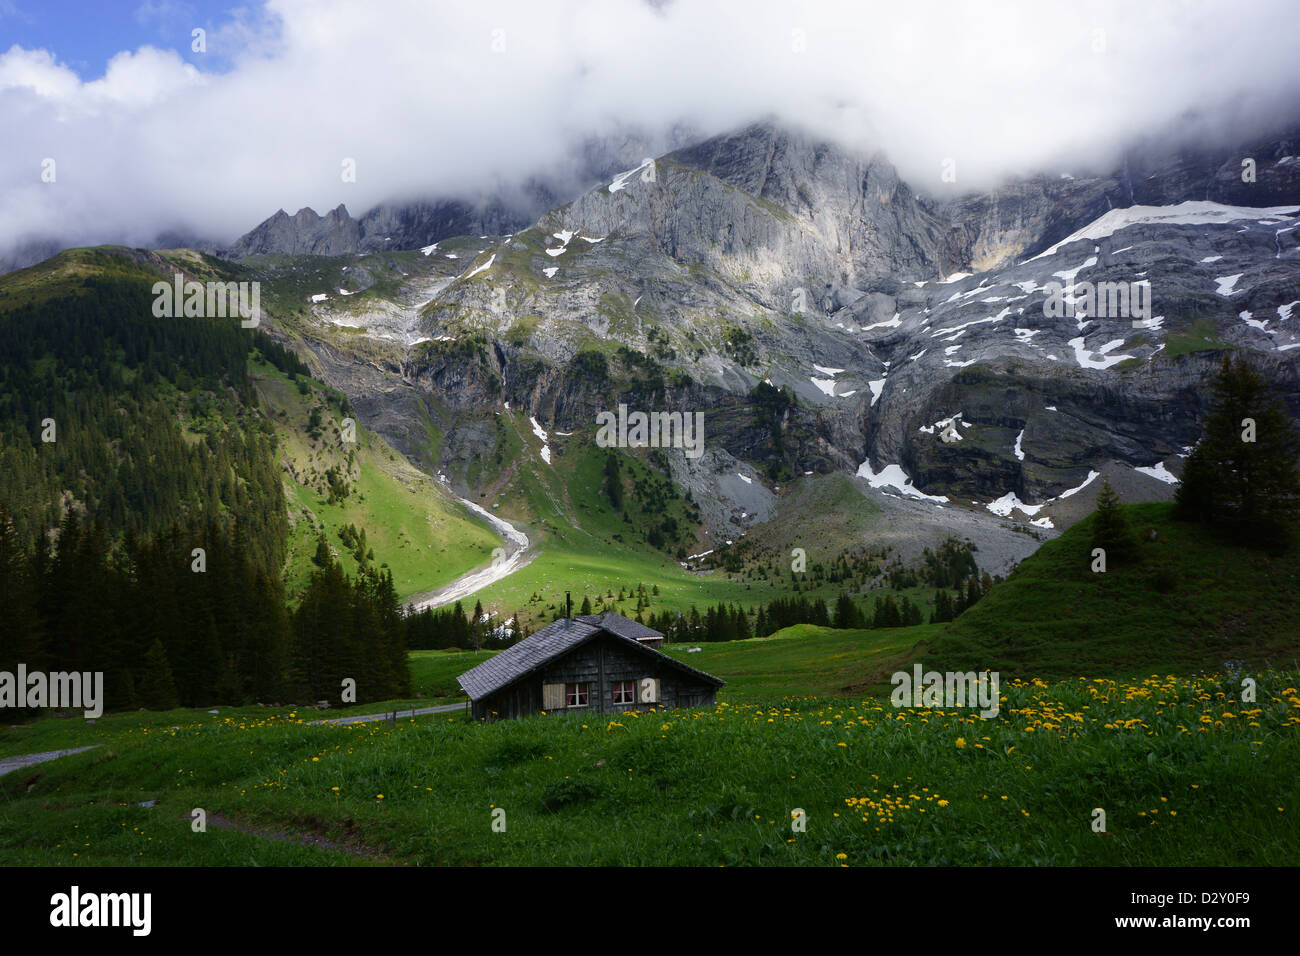 Alpine pastures below  Mt. Wellhorn, Rosenlaui-Schwarzwaldalp, Bernese alps, Switzerland Stock Photo